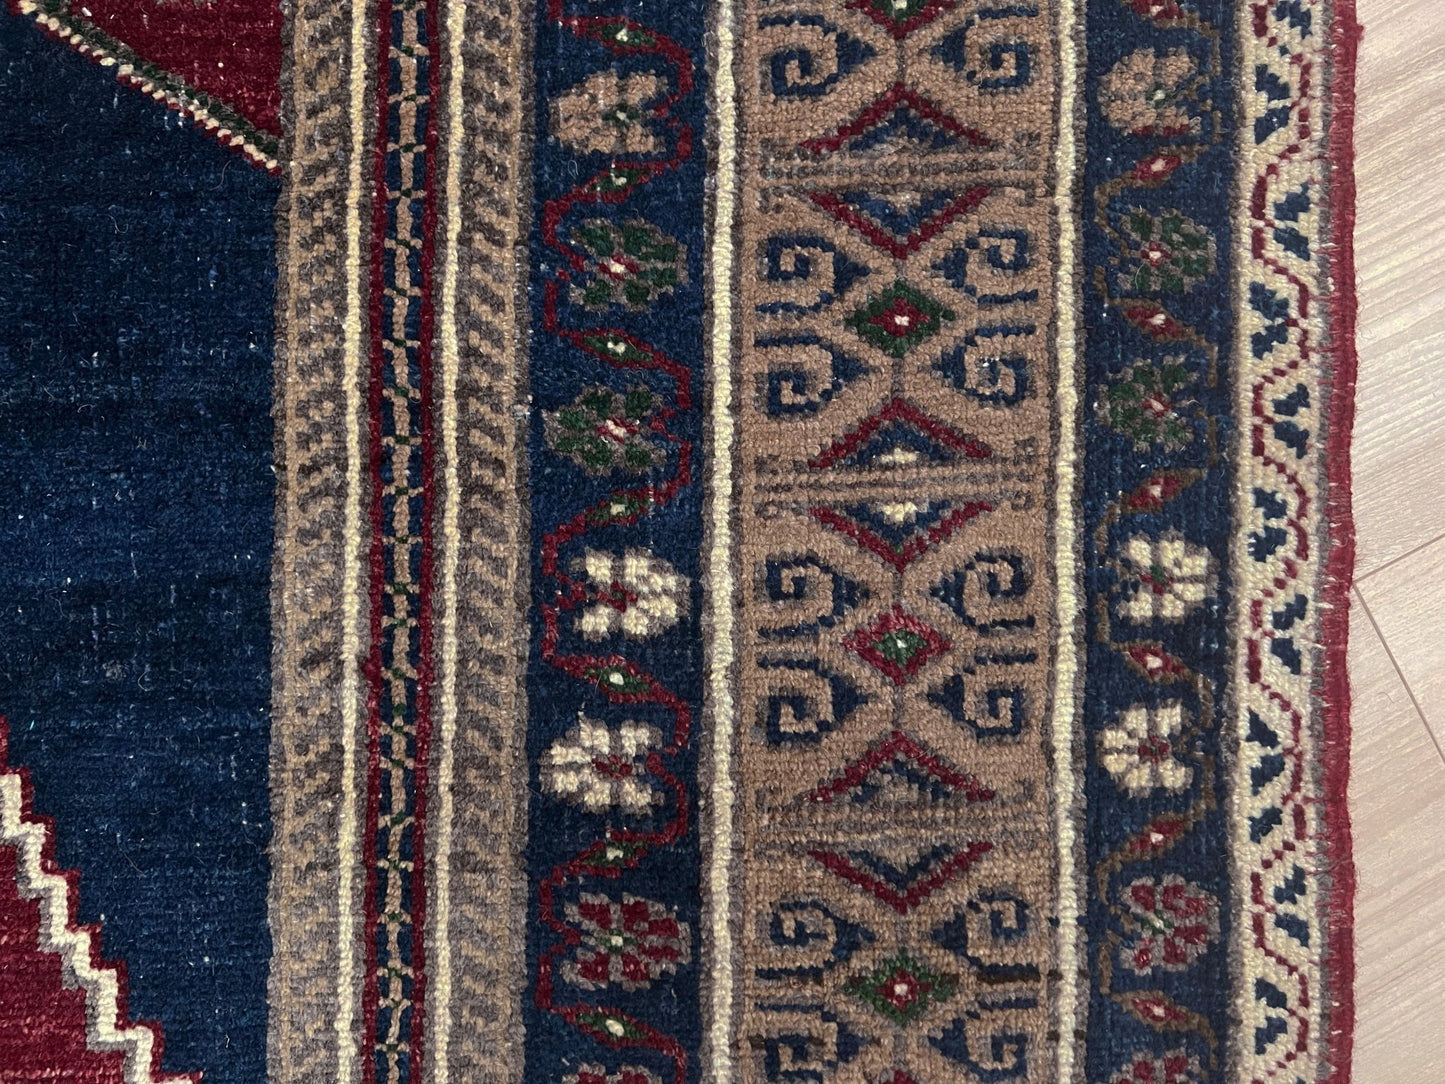 taspinar wool handmade turkish rug san francisco bay area. Oriental rug shop. Buy 4x6 wool handmade rug online free shipping